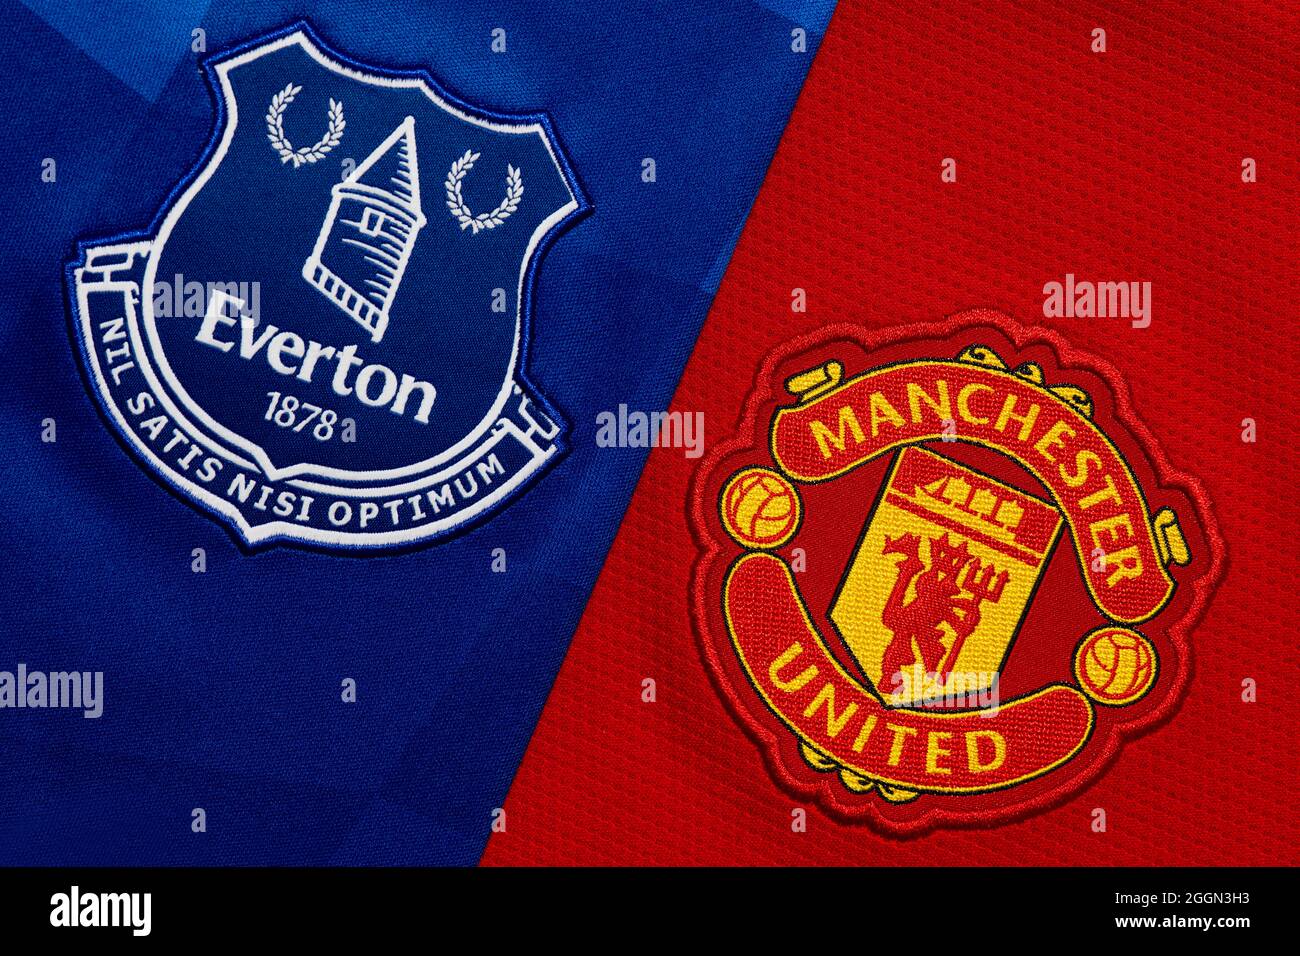 Nahaufnahme des Vereinswappens von Manchester United & Everton. Stockfoto